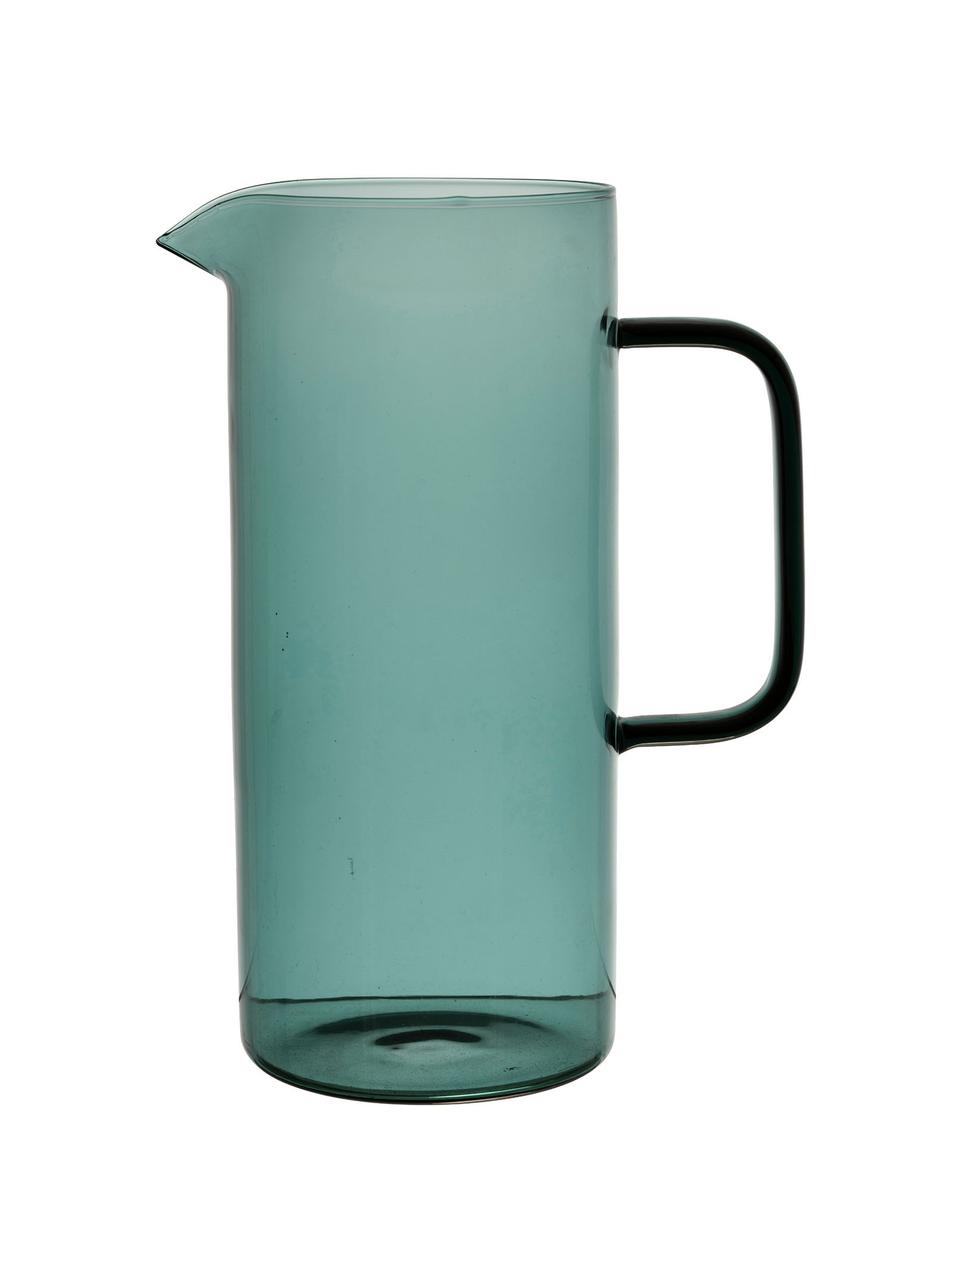 Pichet en verre turquoise poignée noire Dilacia, Verre borosilicate, Turquoise, transparent, 1 l